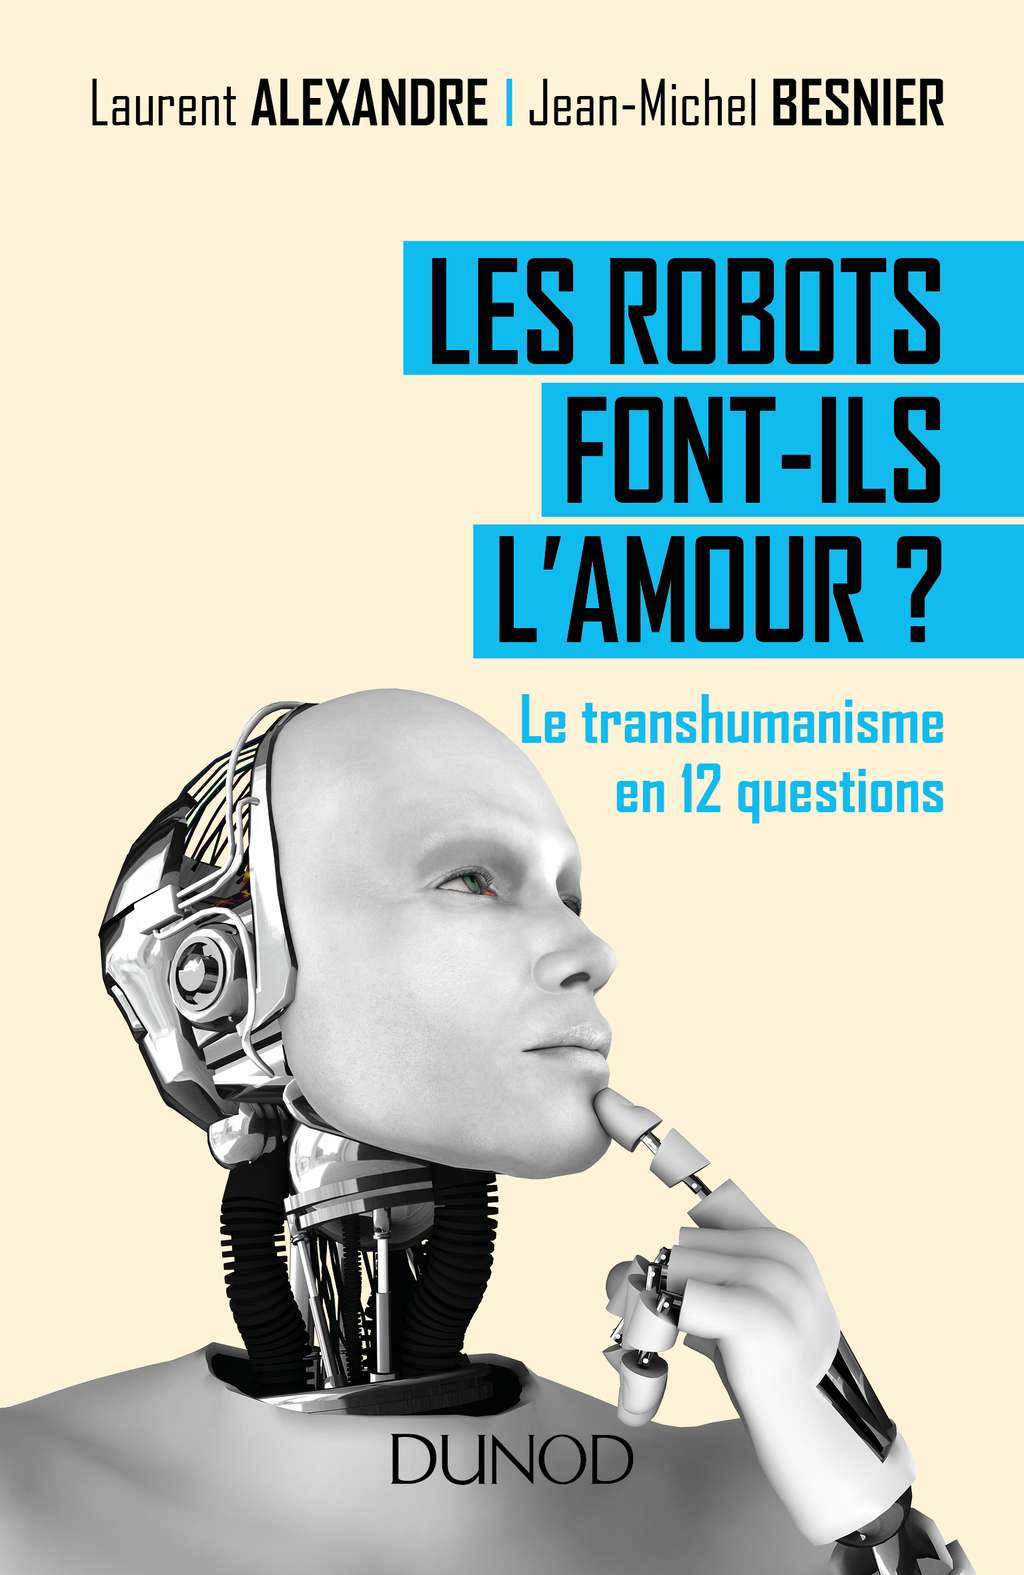 Le livre  <em><a href="http://www.dunod.com/sciences-techniques/culture-scientifique/themes/les-robots-font-ils-lamour" title="Les robots font-ils l'amour ? Le transhumanisme en 12 questions" target="_blank">Les robots font-ils l'amour ?</a></em> est paru aux éditions Dunod. © Dunod